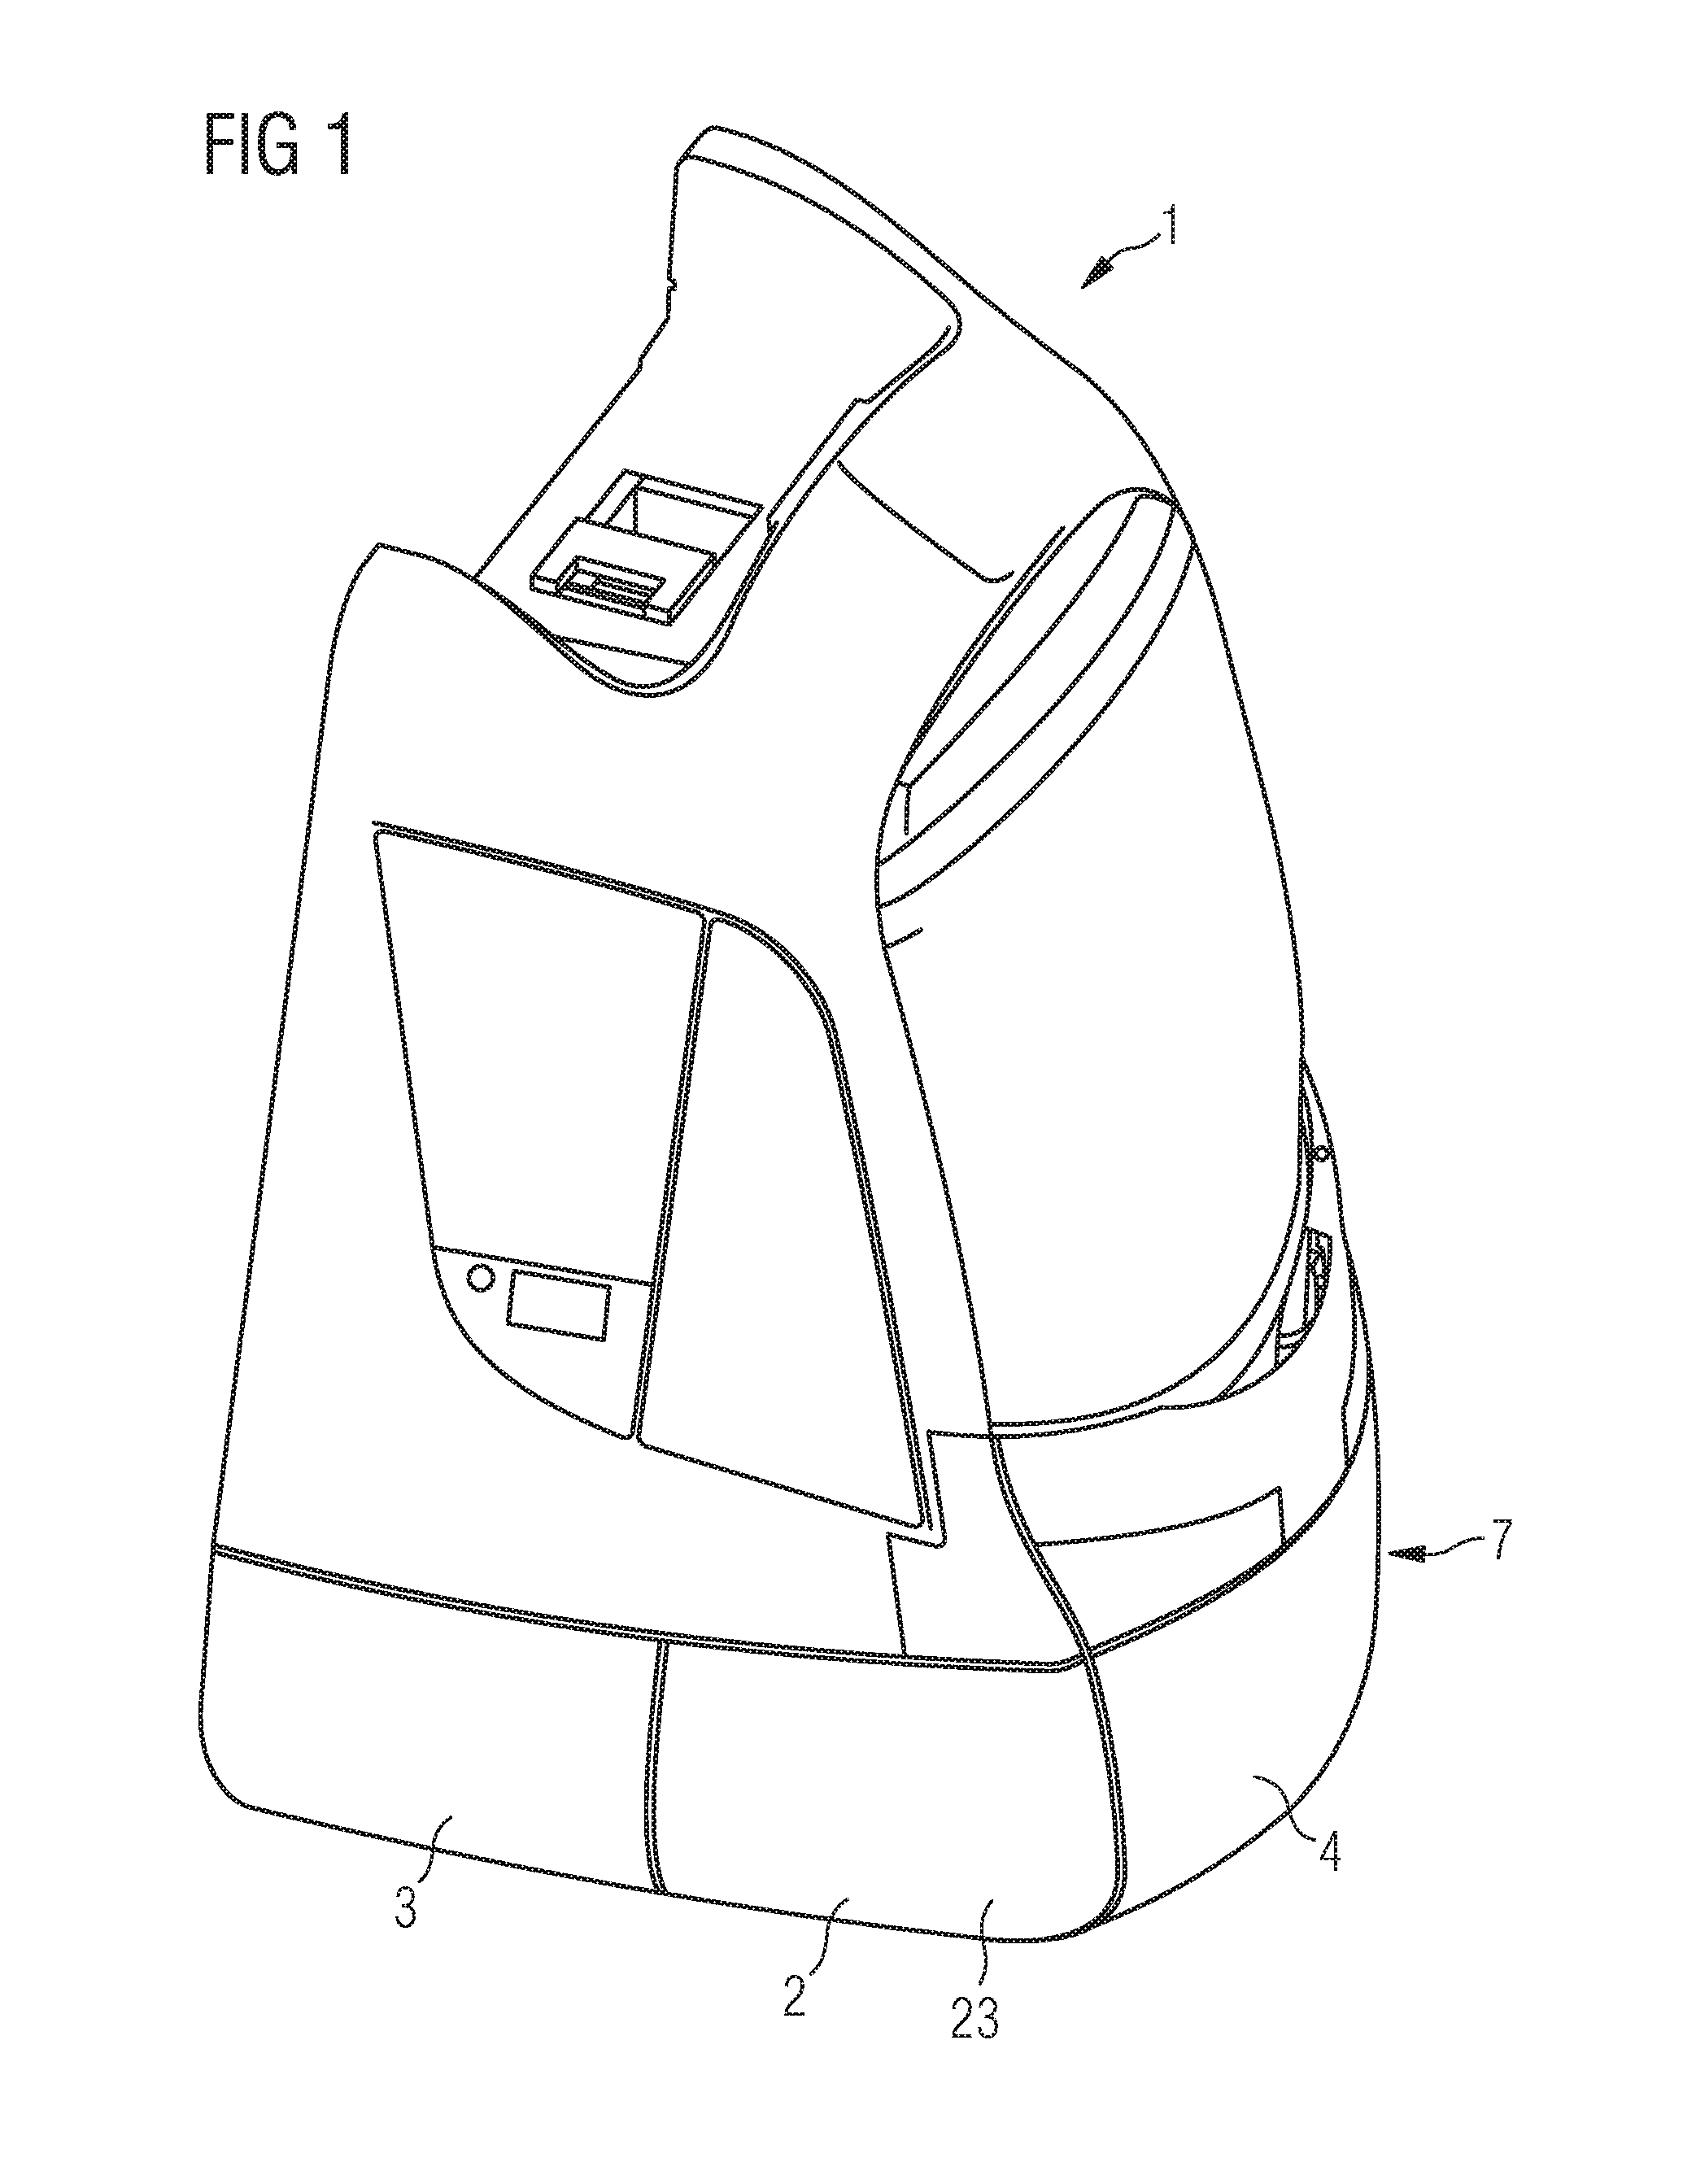 Crash-resistant front apron for a rail vehicle